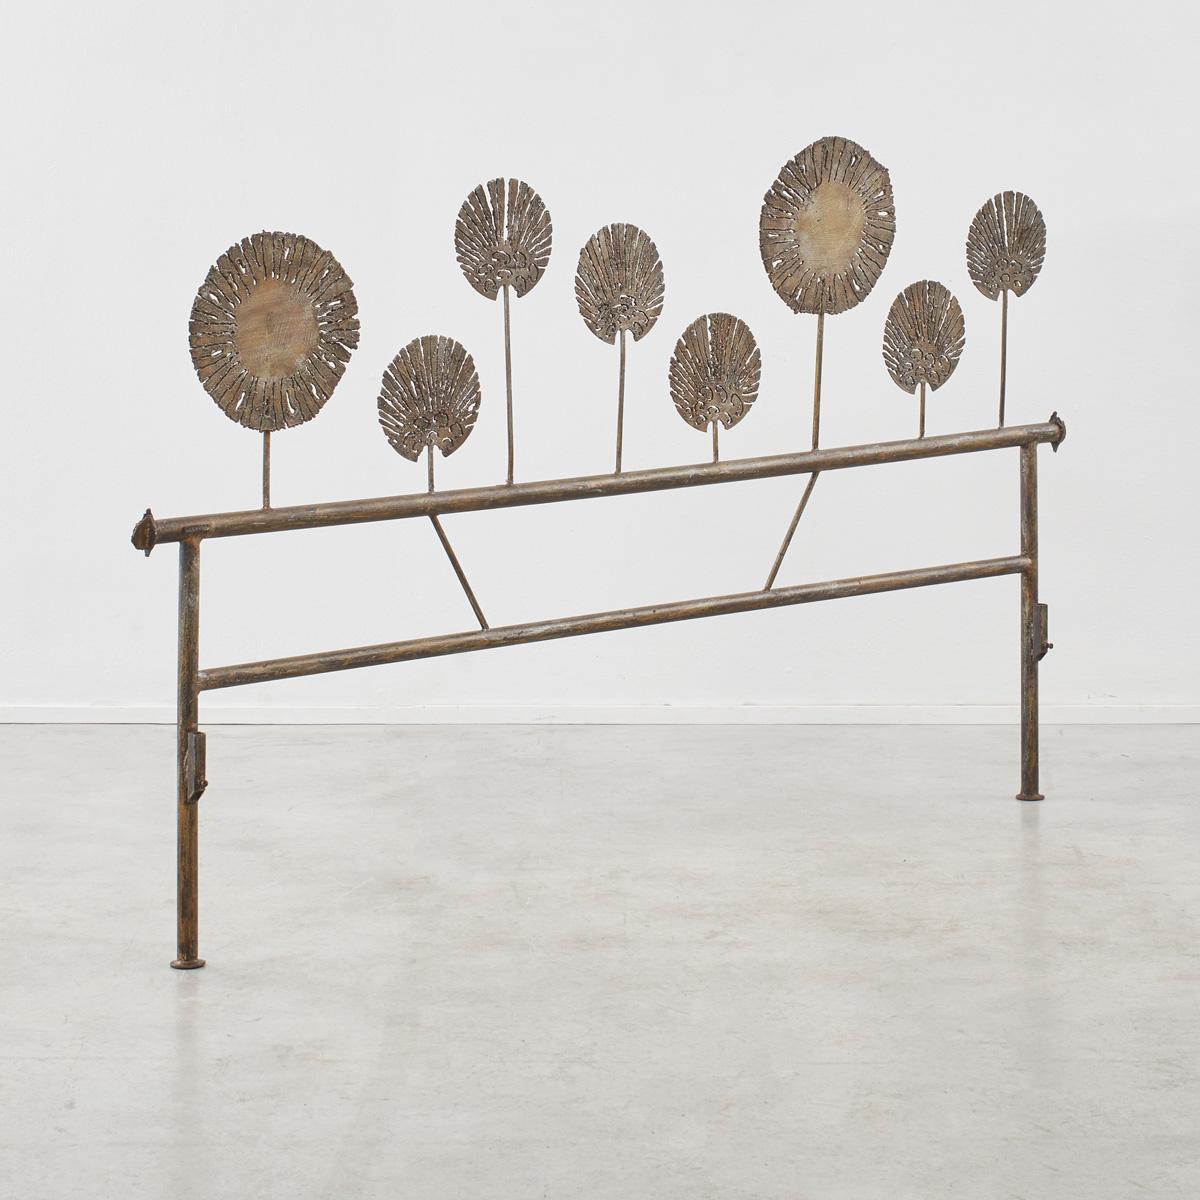 
Salvino Marsura est né à Trévise en 1938 et a appris son métier dans l'atelier dynamique du sculpteur Toni Benetton. Ses œuvres d'art et ses meubles en fer s'inspirent de l'esthétique manuelle de la forge, donnant la parole au métal brut et aux